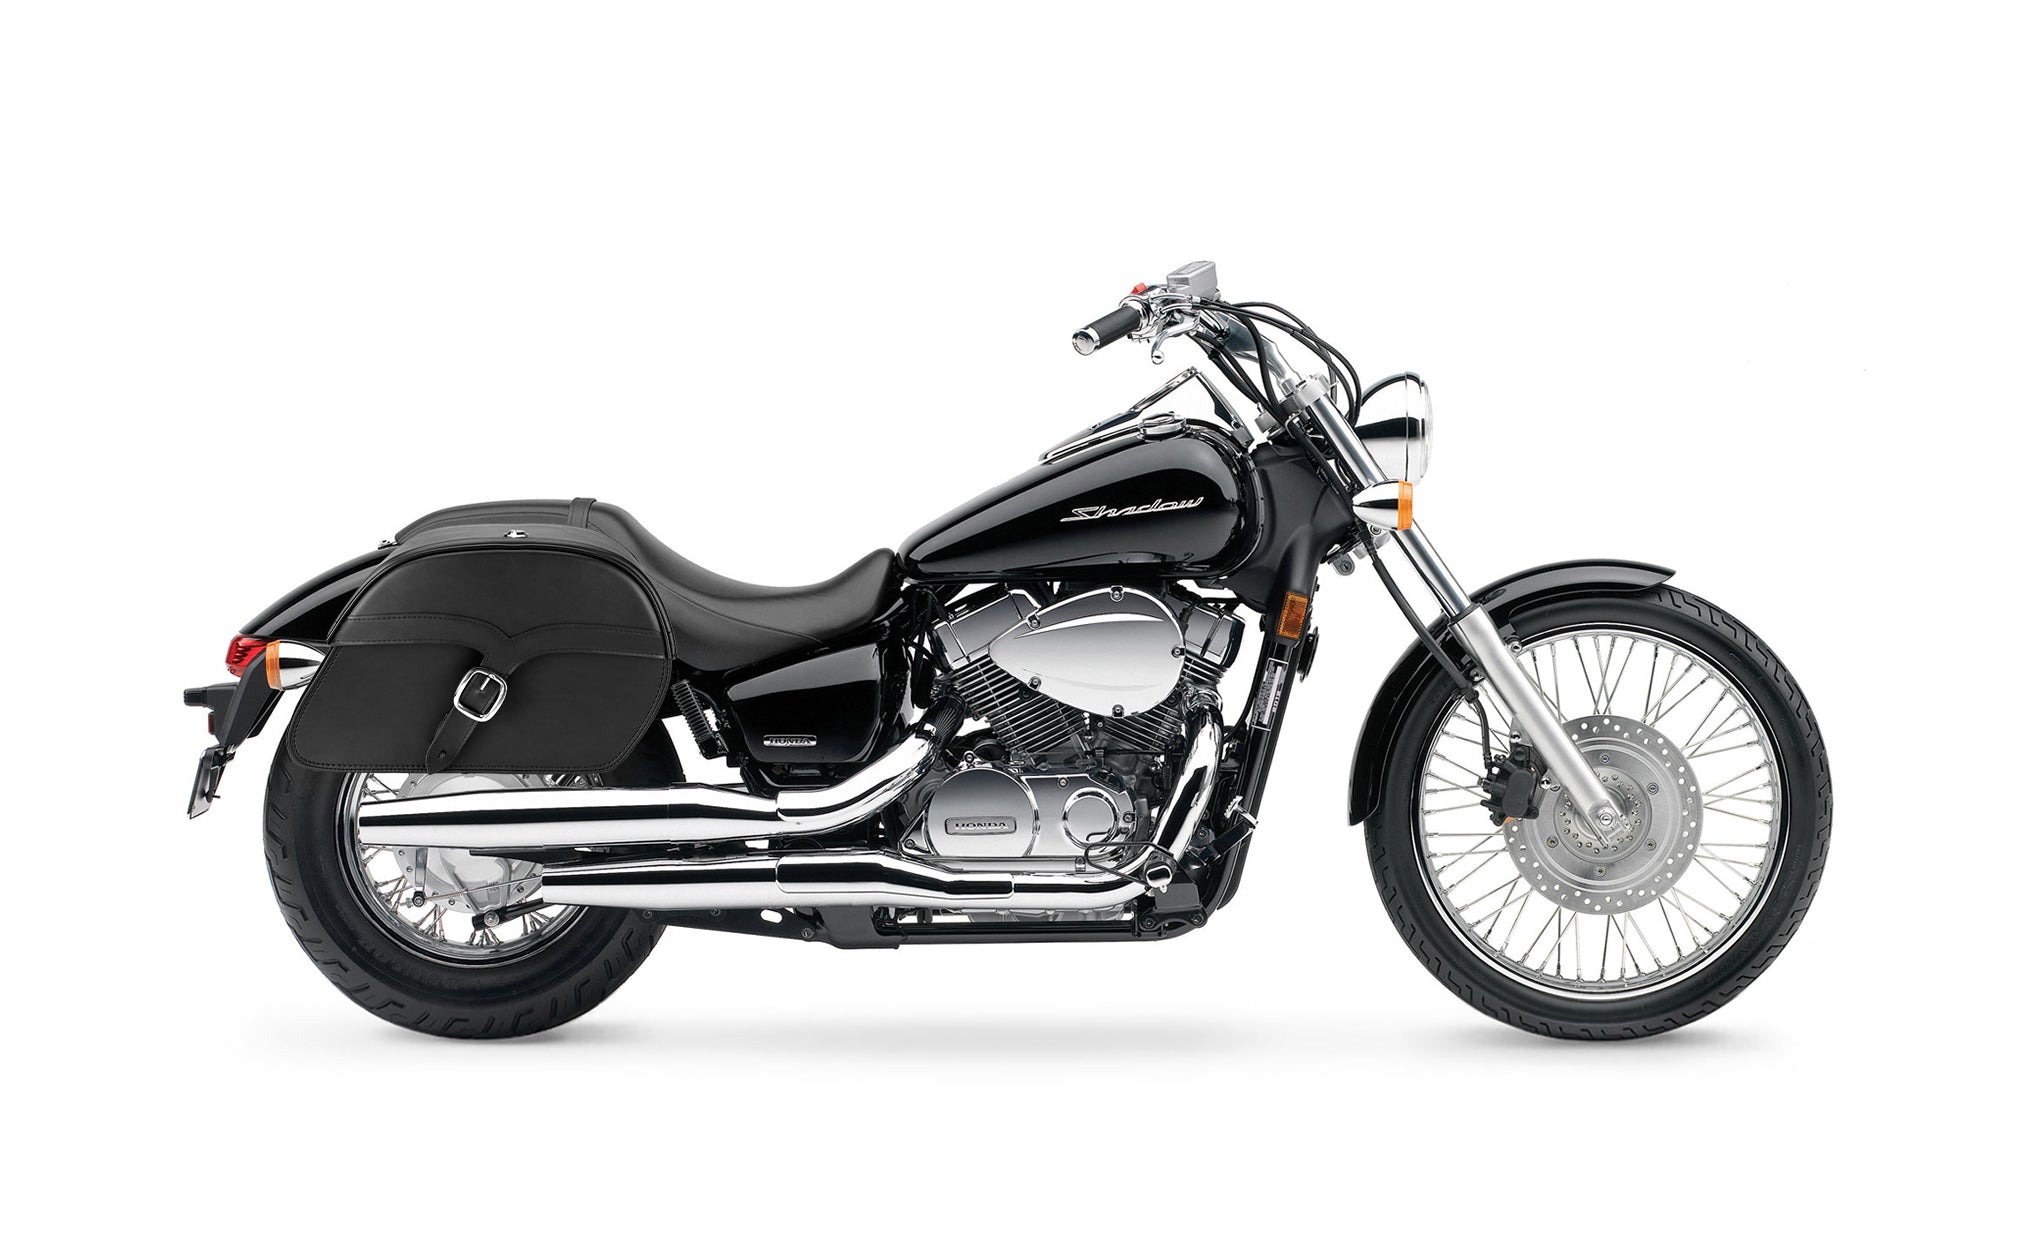 Viking Vintage Medium Honda Shadow 750 Spirit Incl C2 Leather Motorcycle Saddlebags on Bike Photo @expand